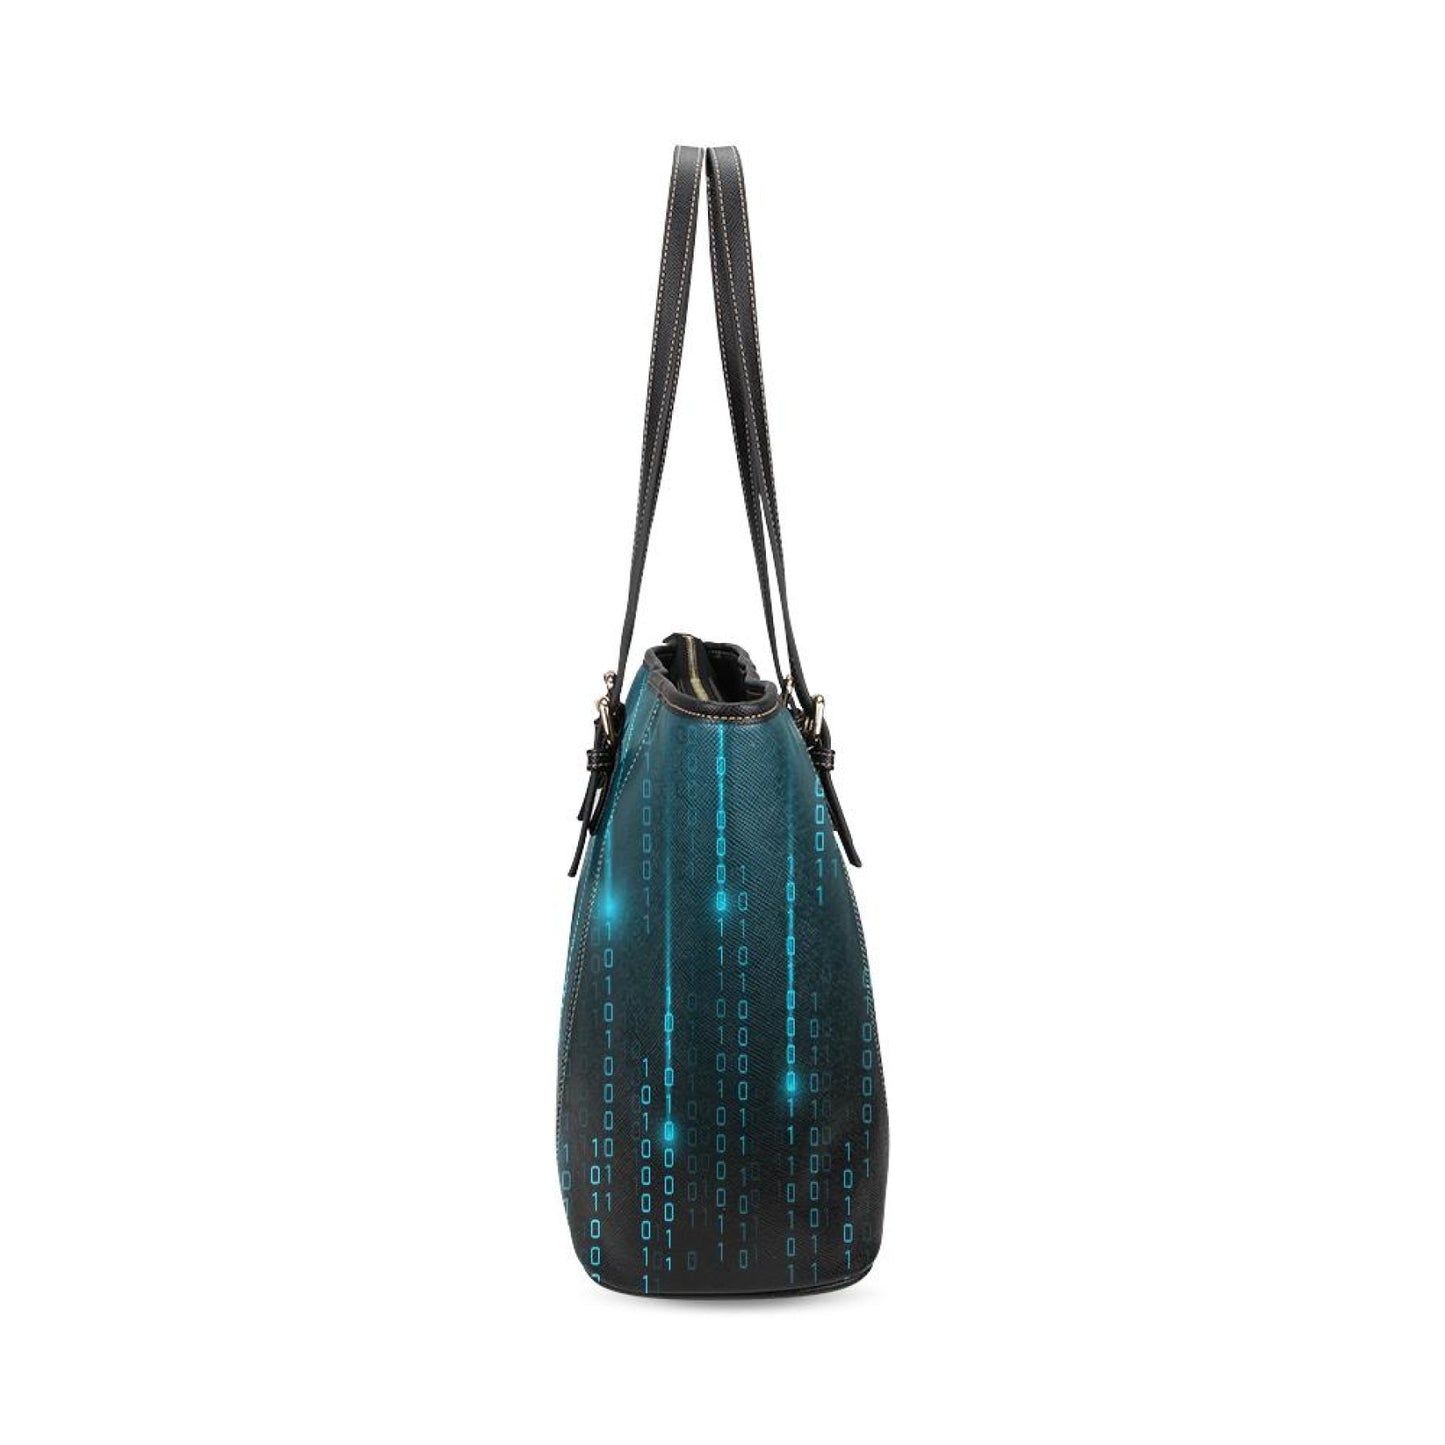 Large Leather Tote Shoulder Bag - Black And Blue Matrix Pattern